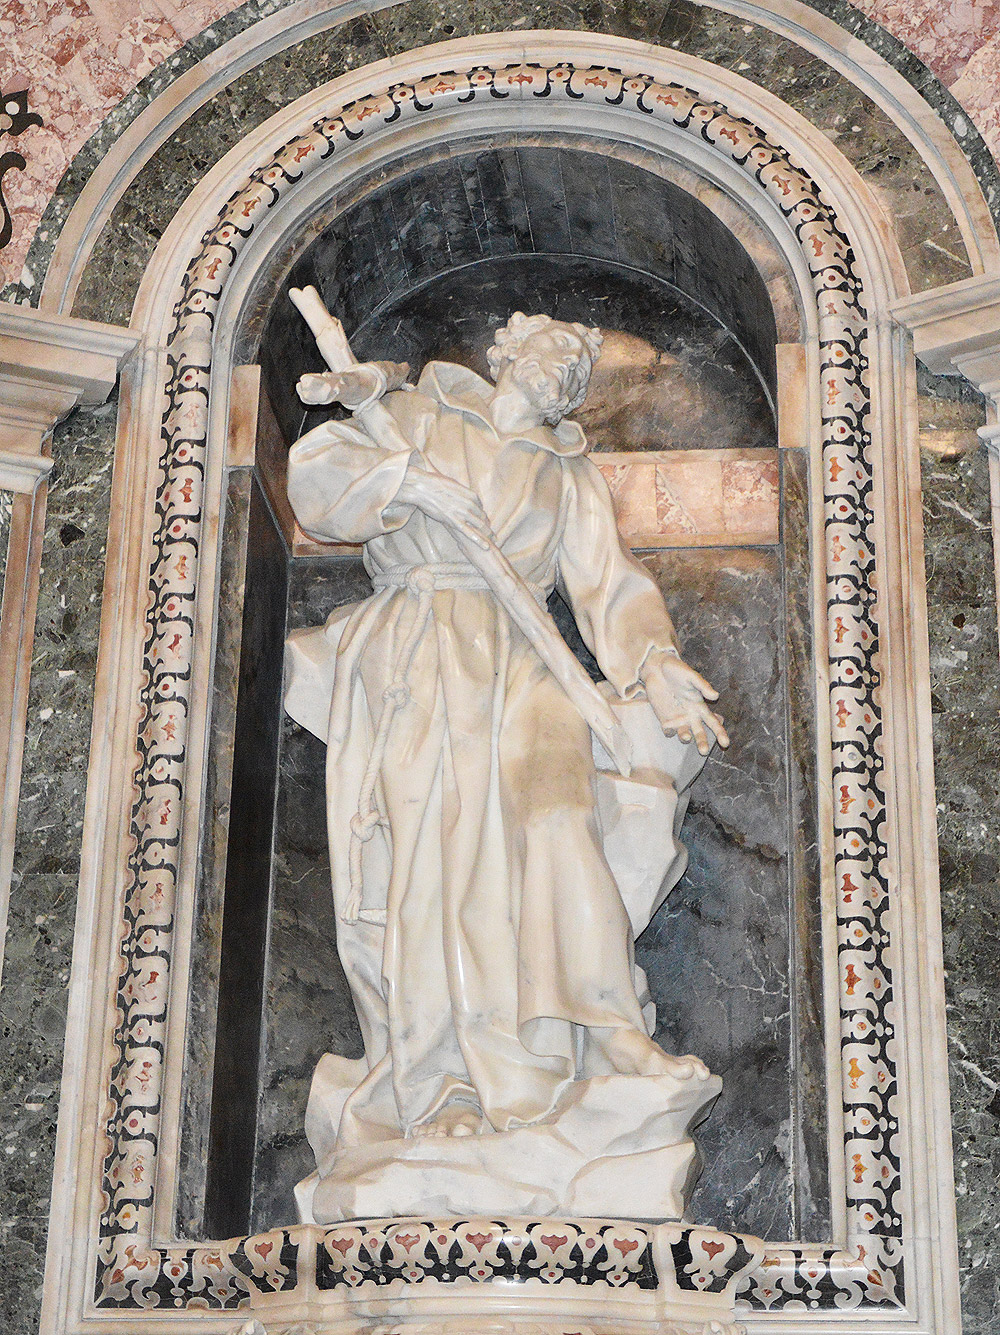 6. Giuseppe Sanmartino, San Francesco d'Assisi
